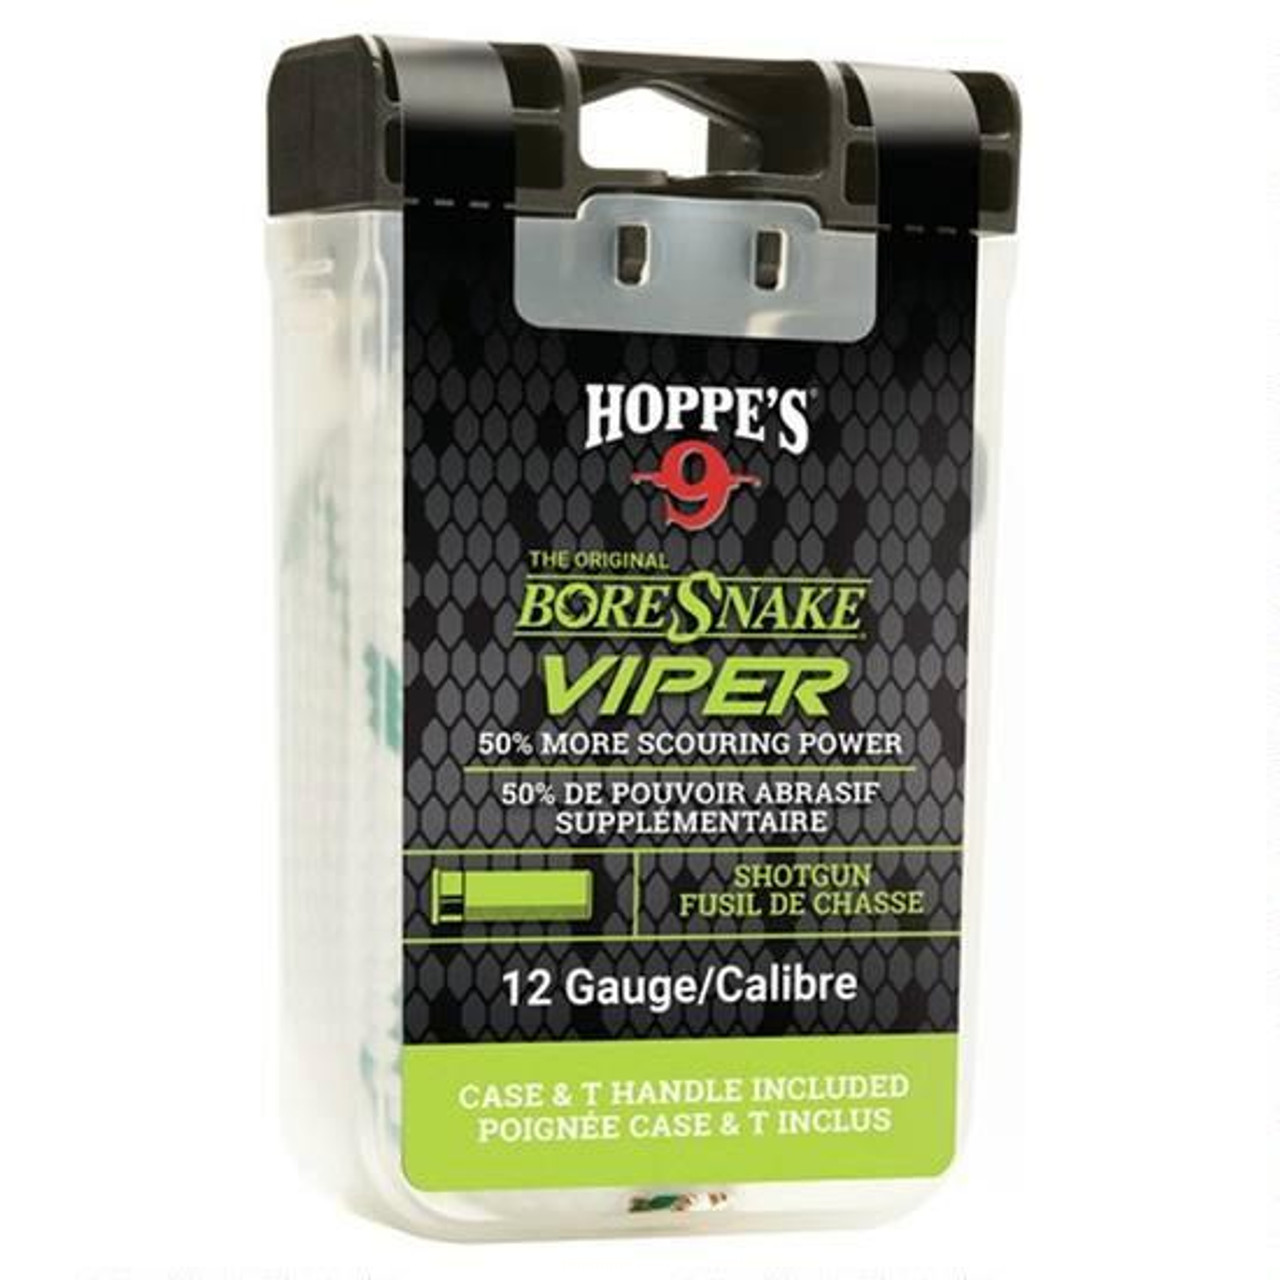 Hoppe's BoreSnake Viper Den Bore Cleaner 12 Gauge